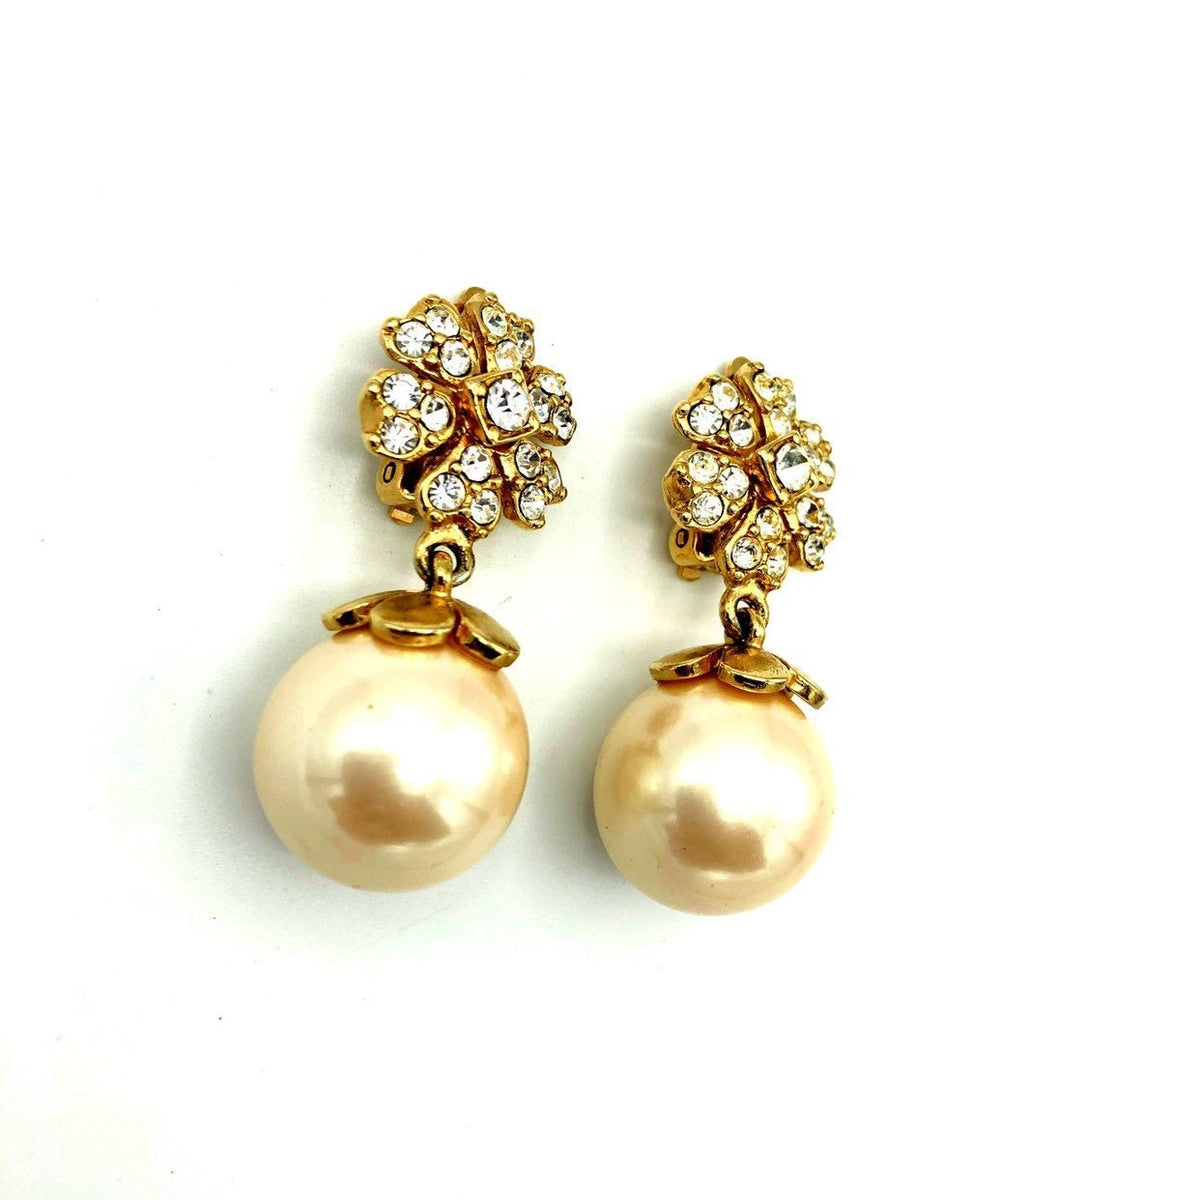 Vintage White Pearl Drop Rhinestone Flower Earrings - 24 Wishes Vintage Jewelry